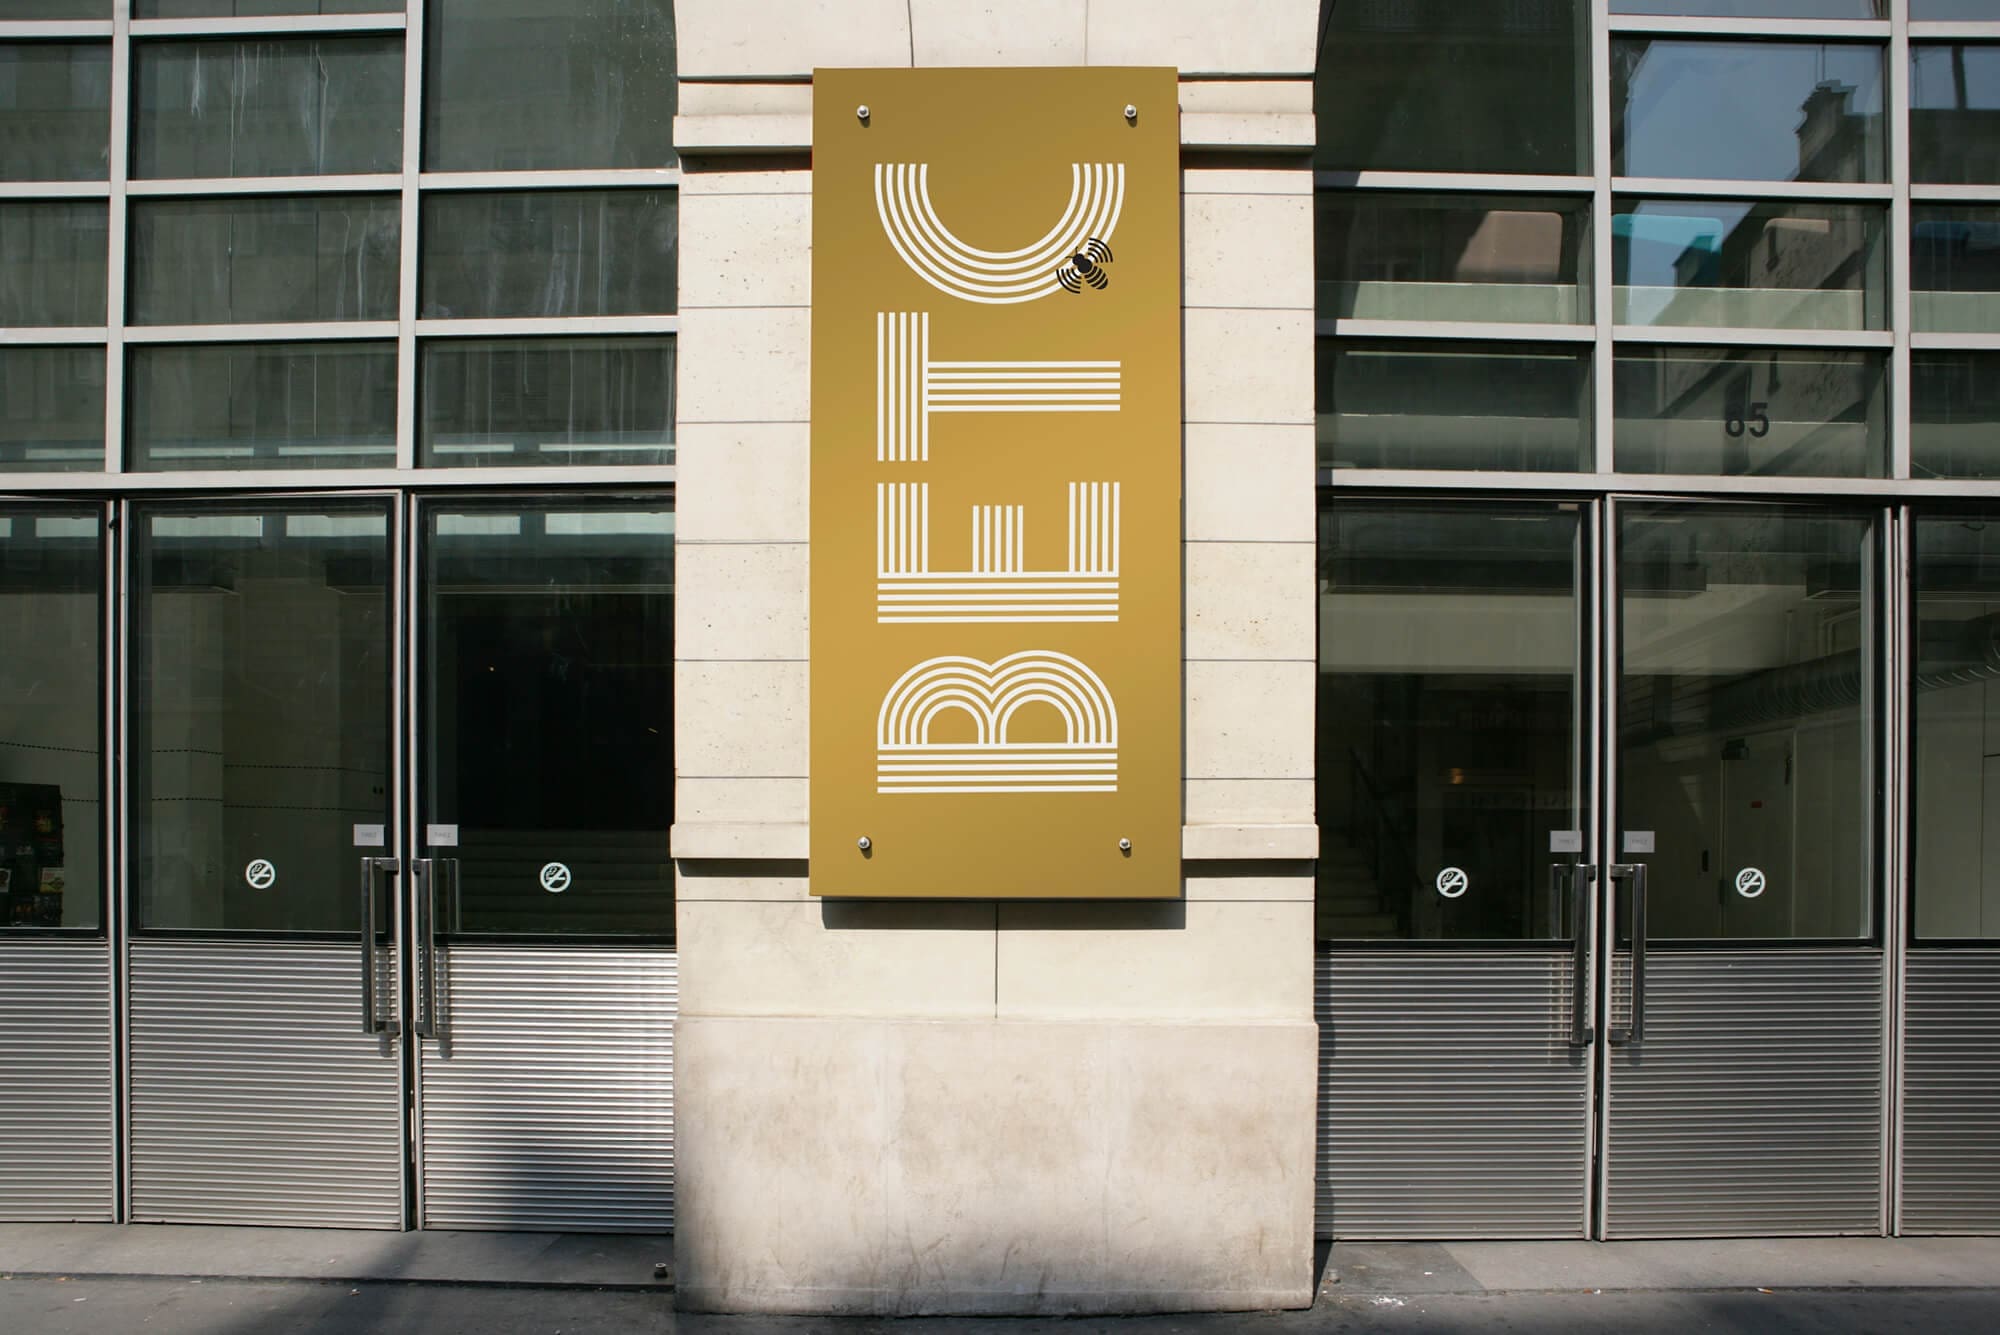 La signalétique extérieur de l'agence de publicité BETC, design IchetKar